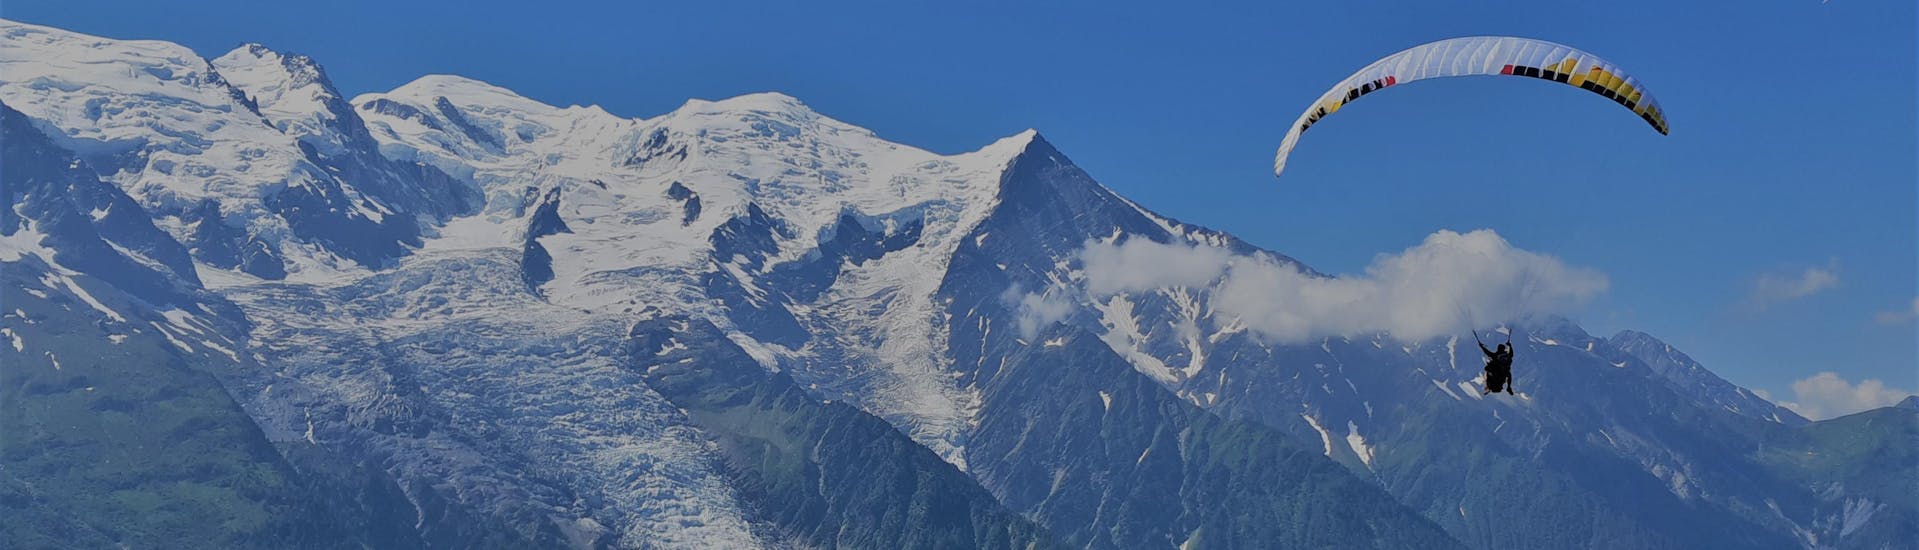 Parapente biplaza térmico en Chamonix (a partir de 14 años) - Aiguille du Midi.